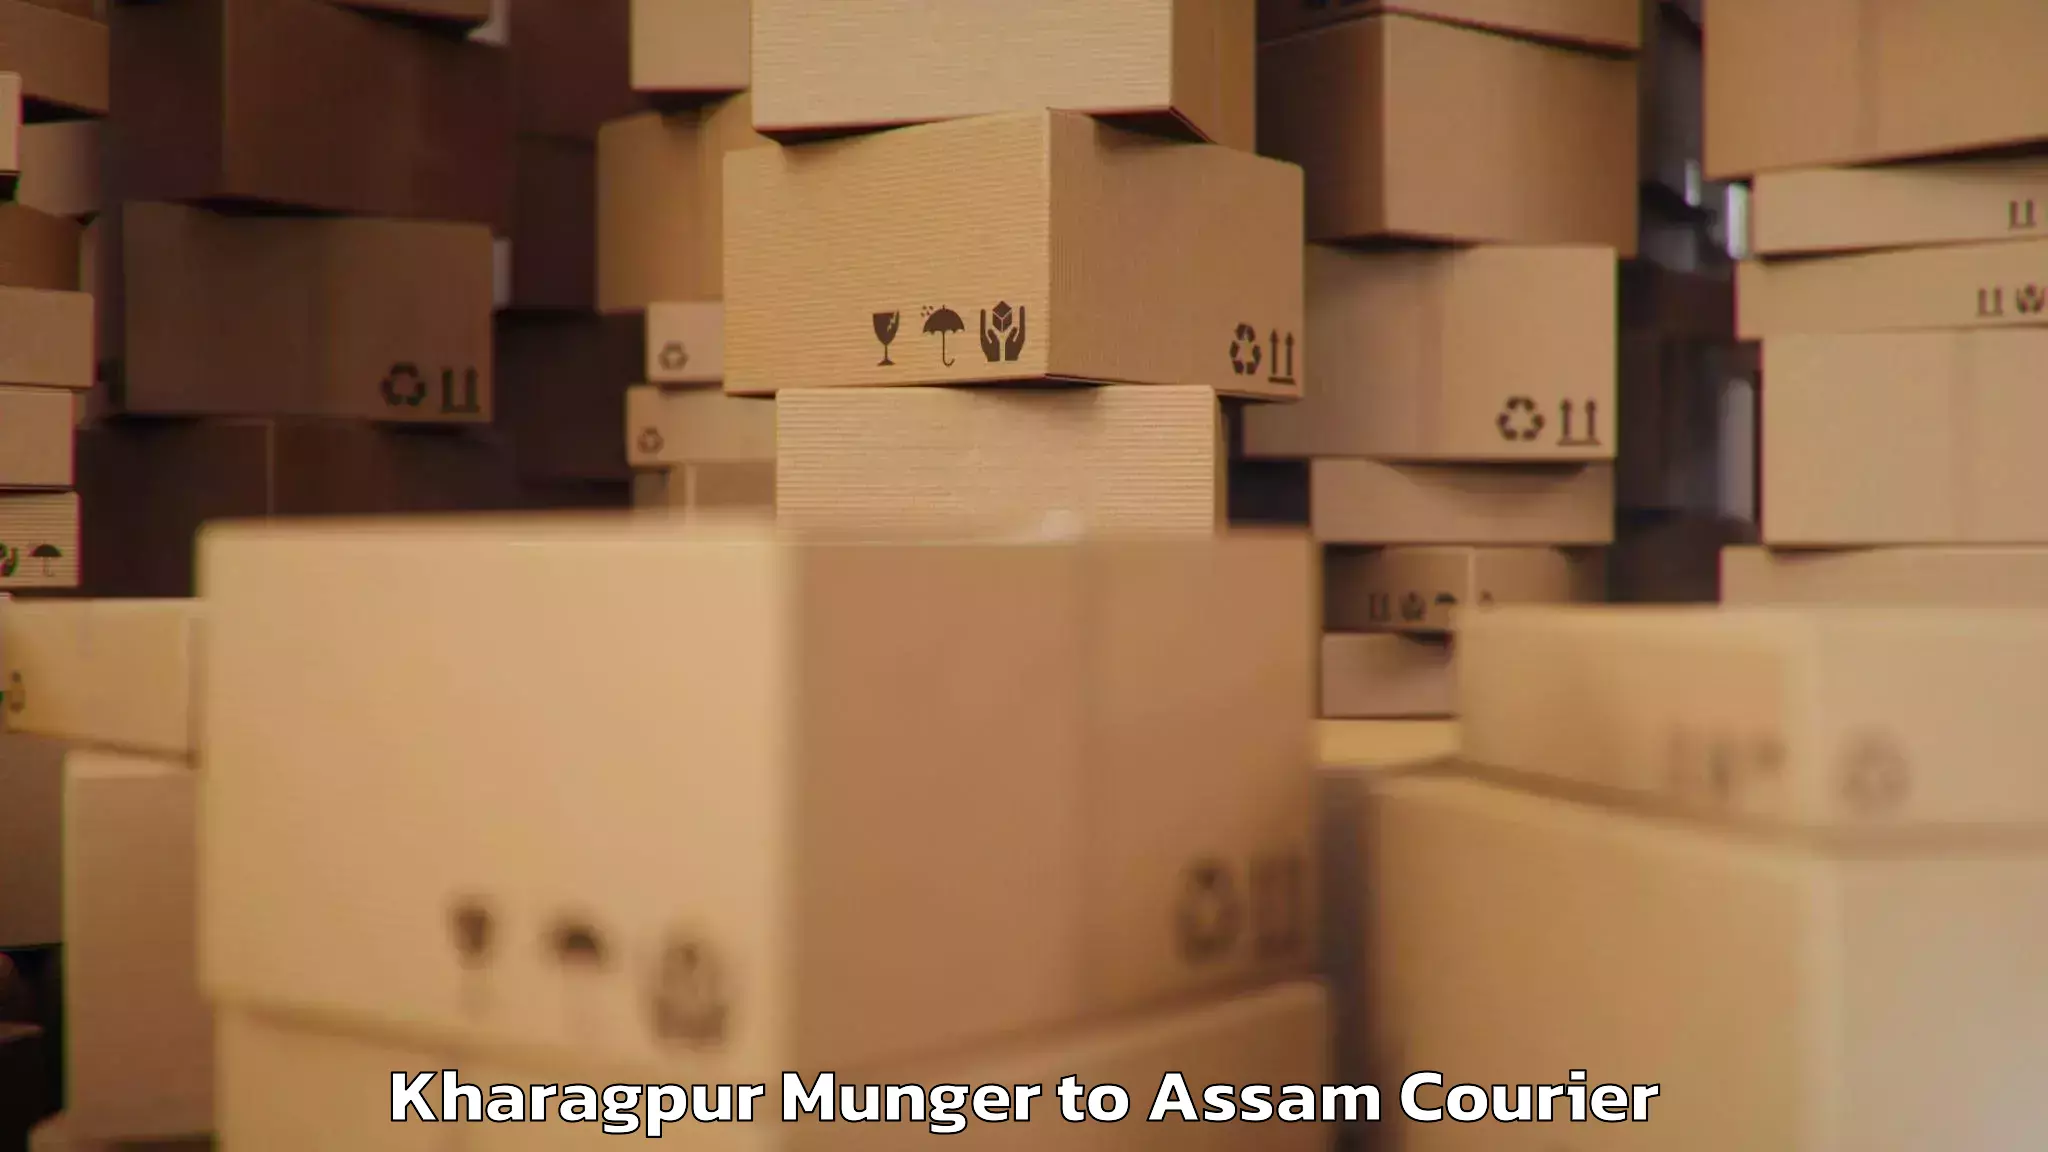 Luggage transit service Kharagpur Munger to Assam